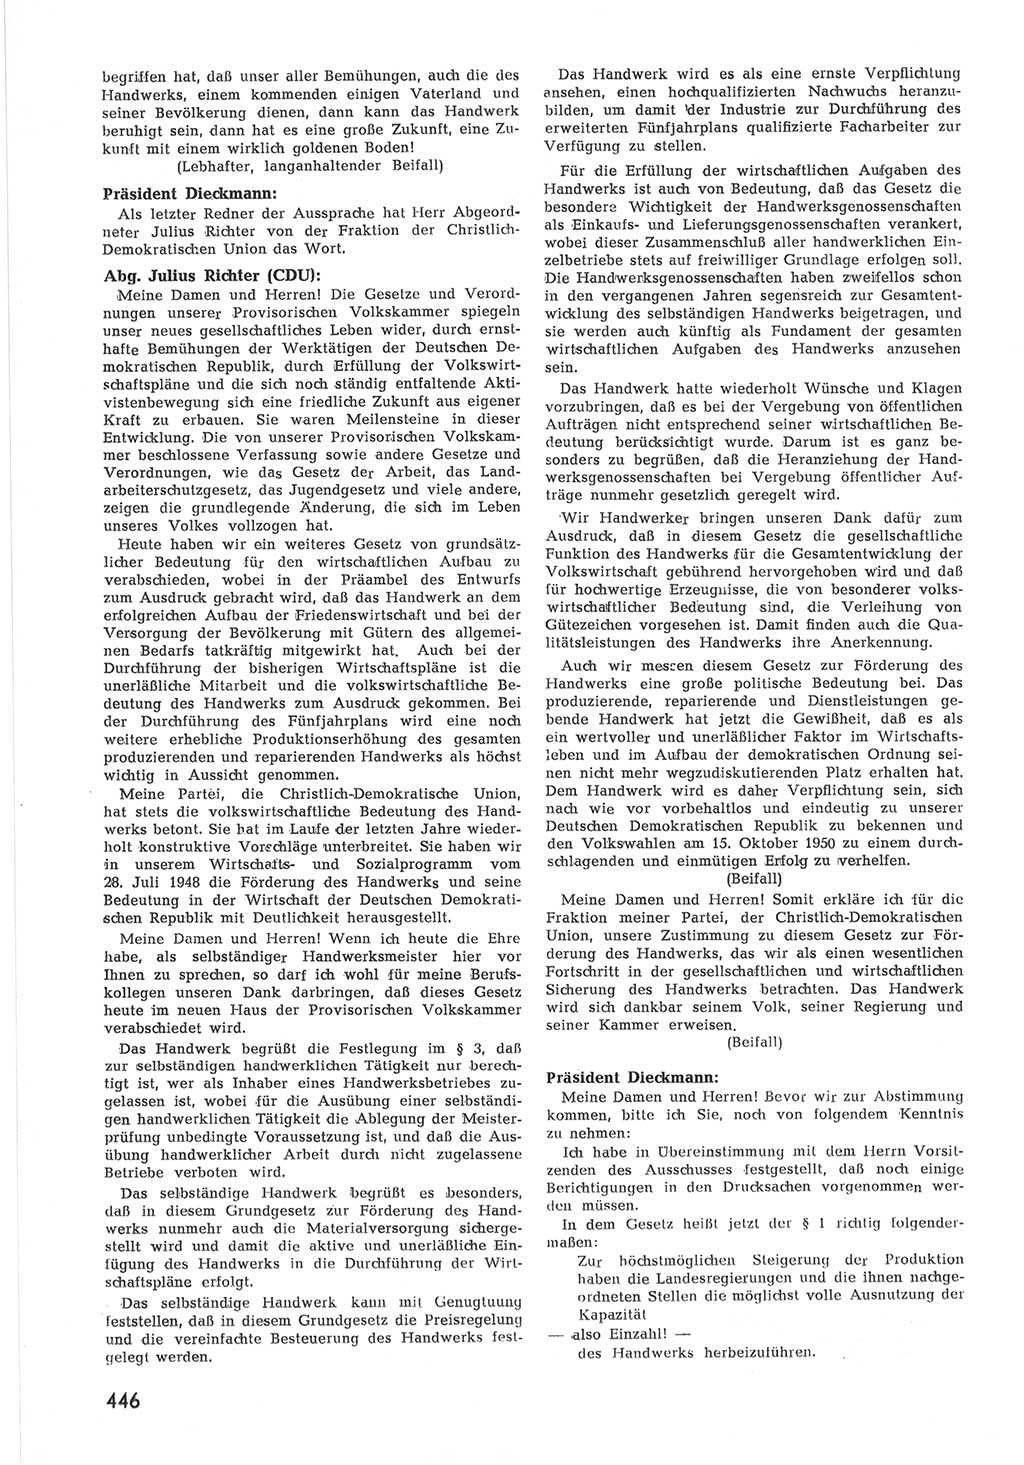 Provisorische Volkskammer (VK) der Deutschen Demokratischen Republik (DDR) 1949-1950, Dokument 464 (Prov. VK DDR 1949-1950, Dok. 464)